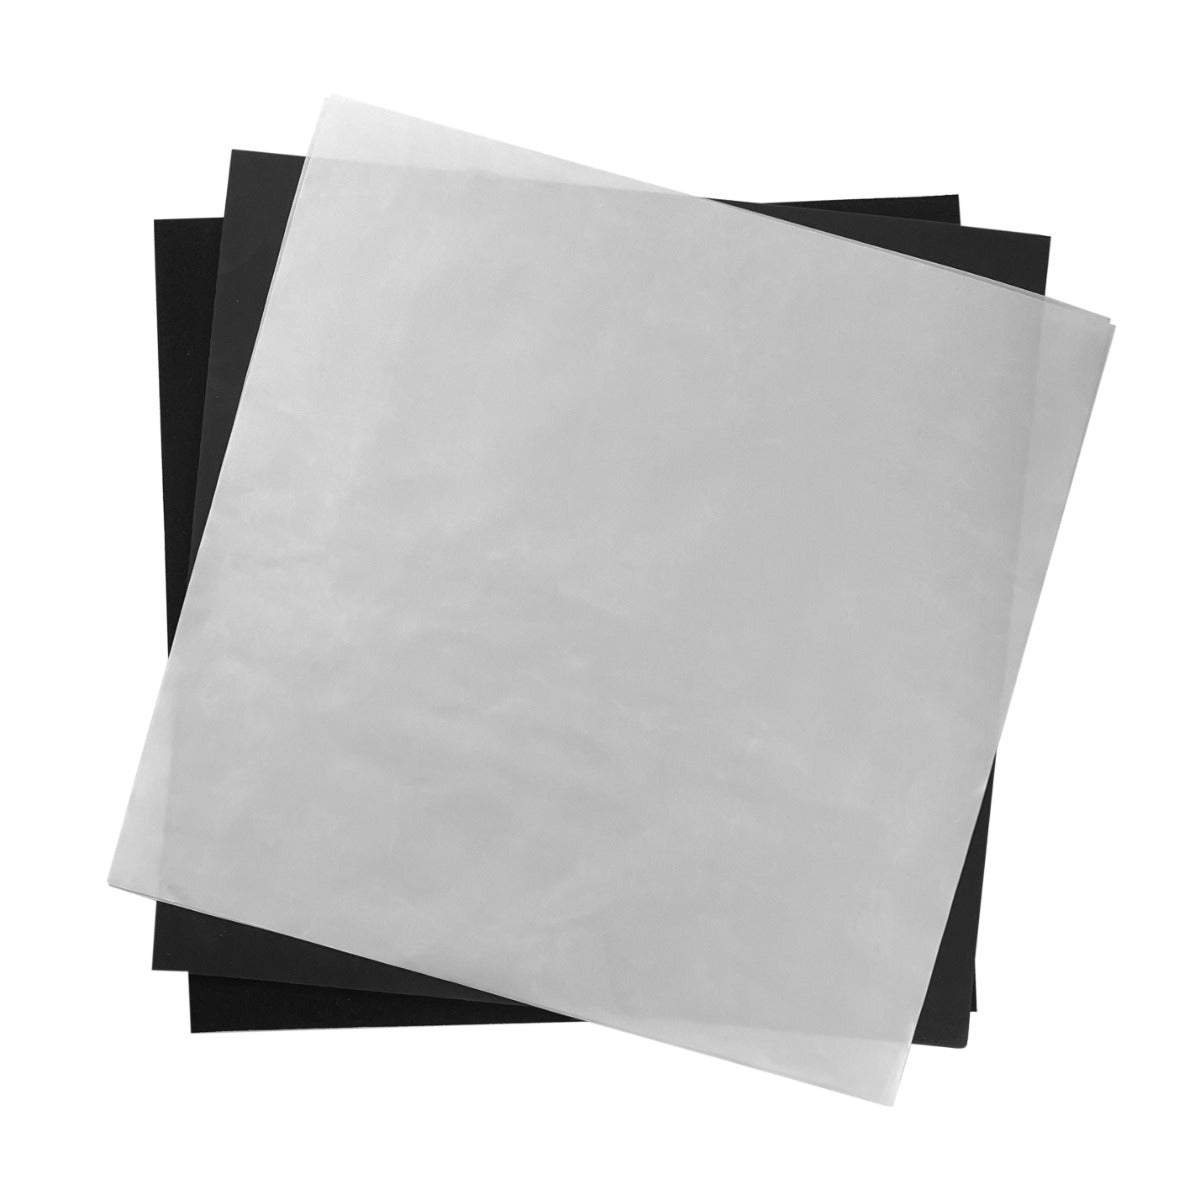 Clam Heat Press 38 x 38cm, Teflon Sheet & Sublimation Paper